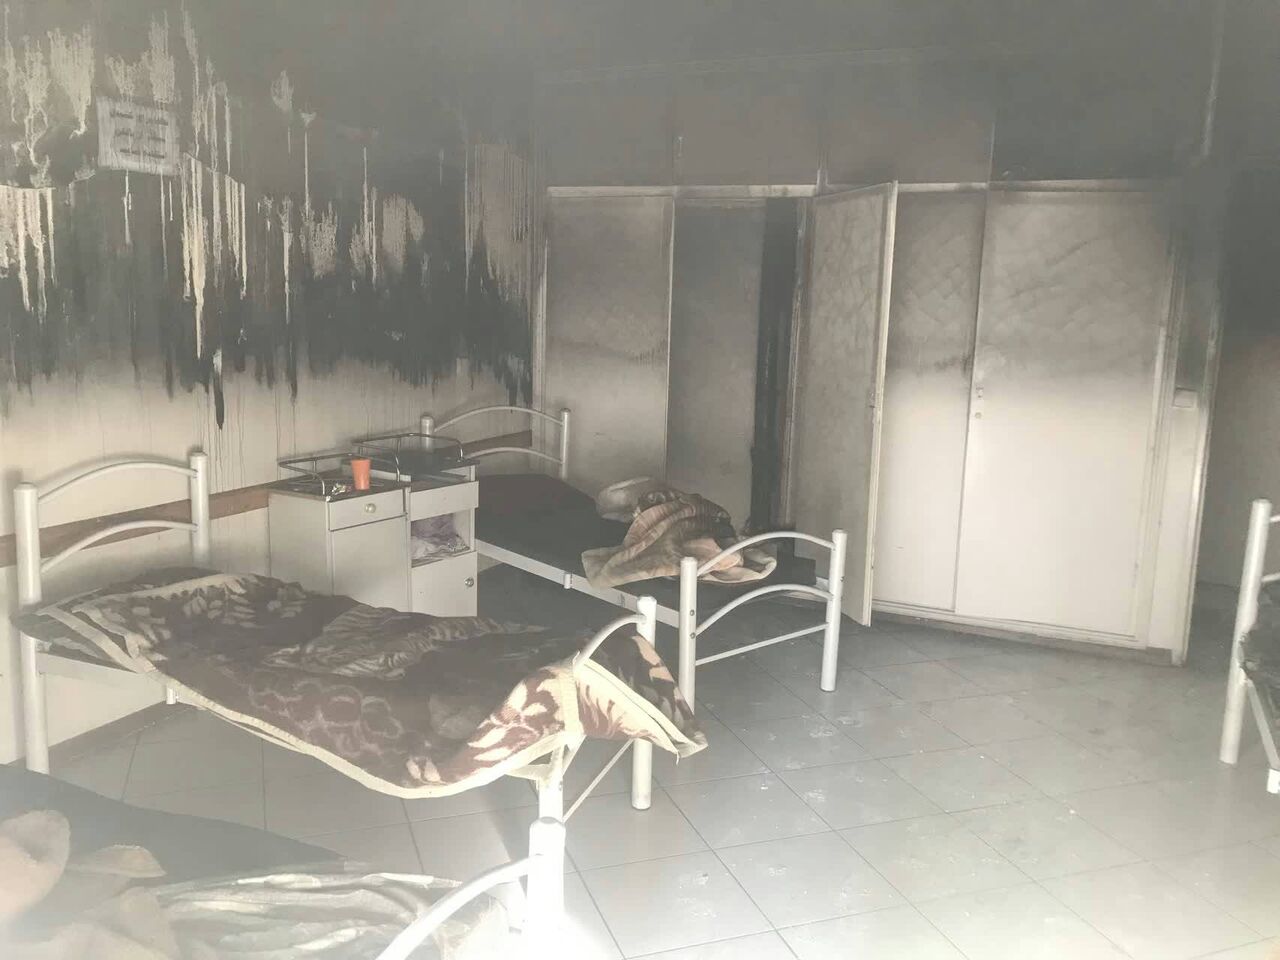 آتش سوزی یک مرکز درمانی در تهران ۲ مصدوم داشت